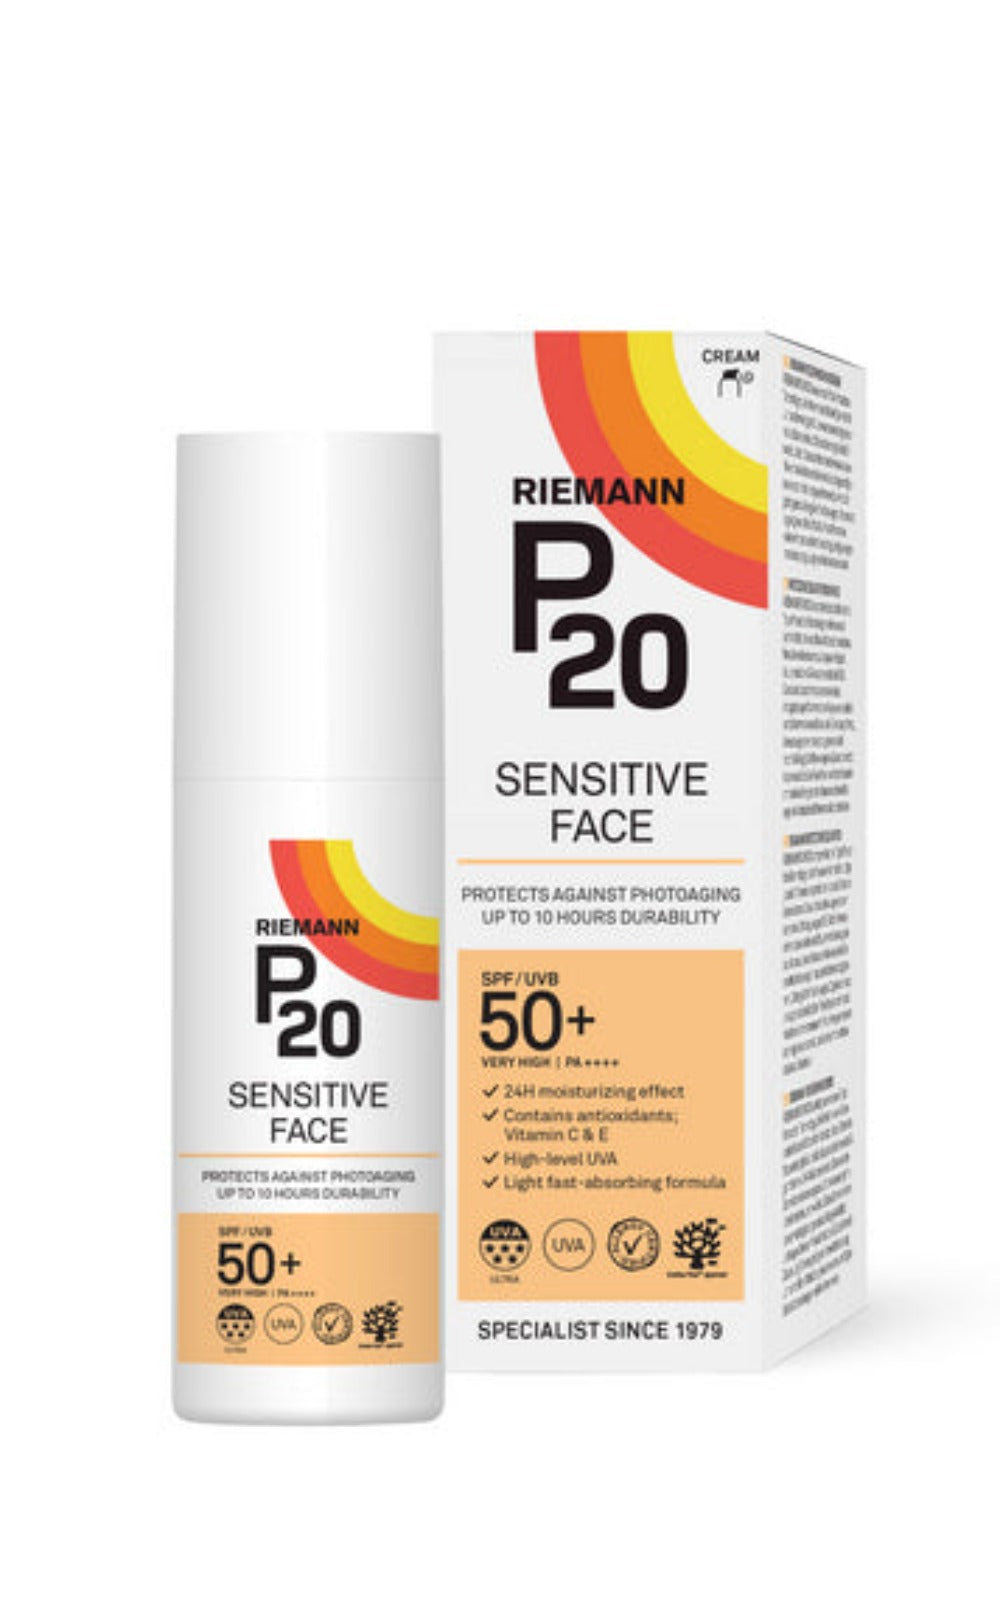 P20 Sensitive Face SPF50+ 50g